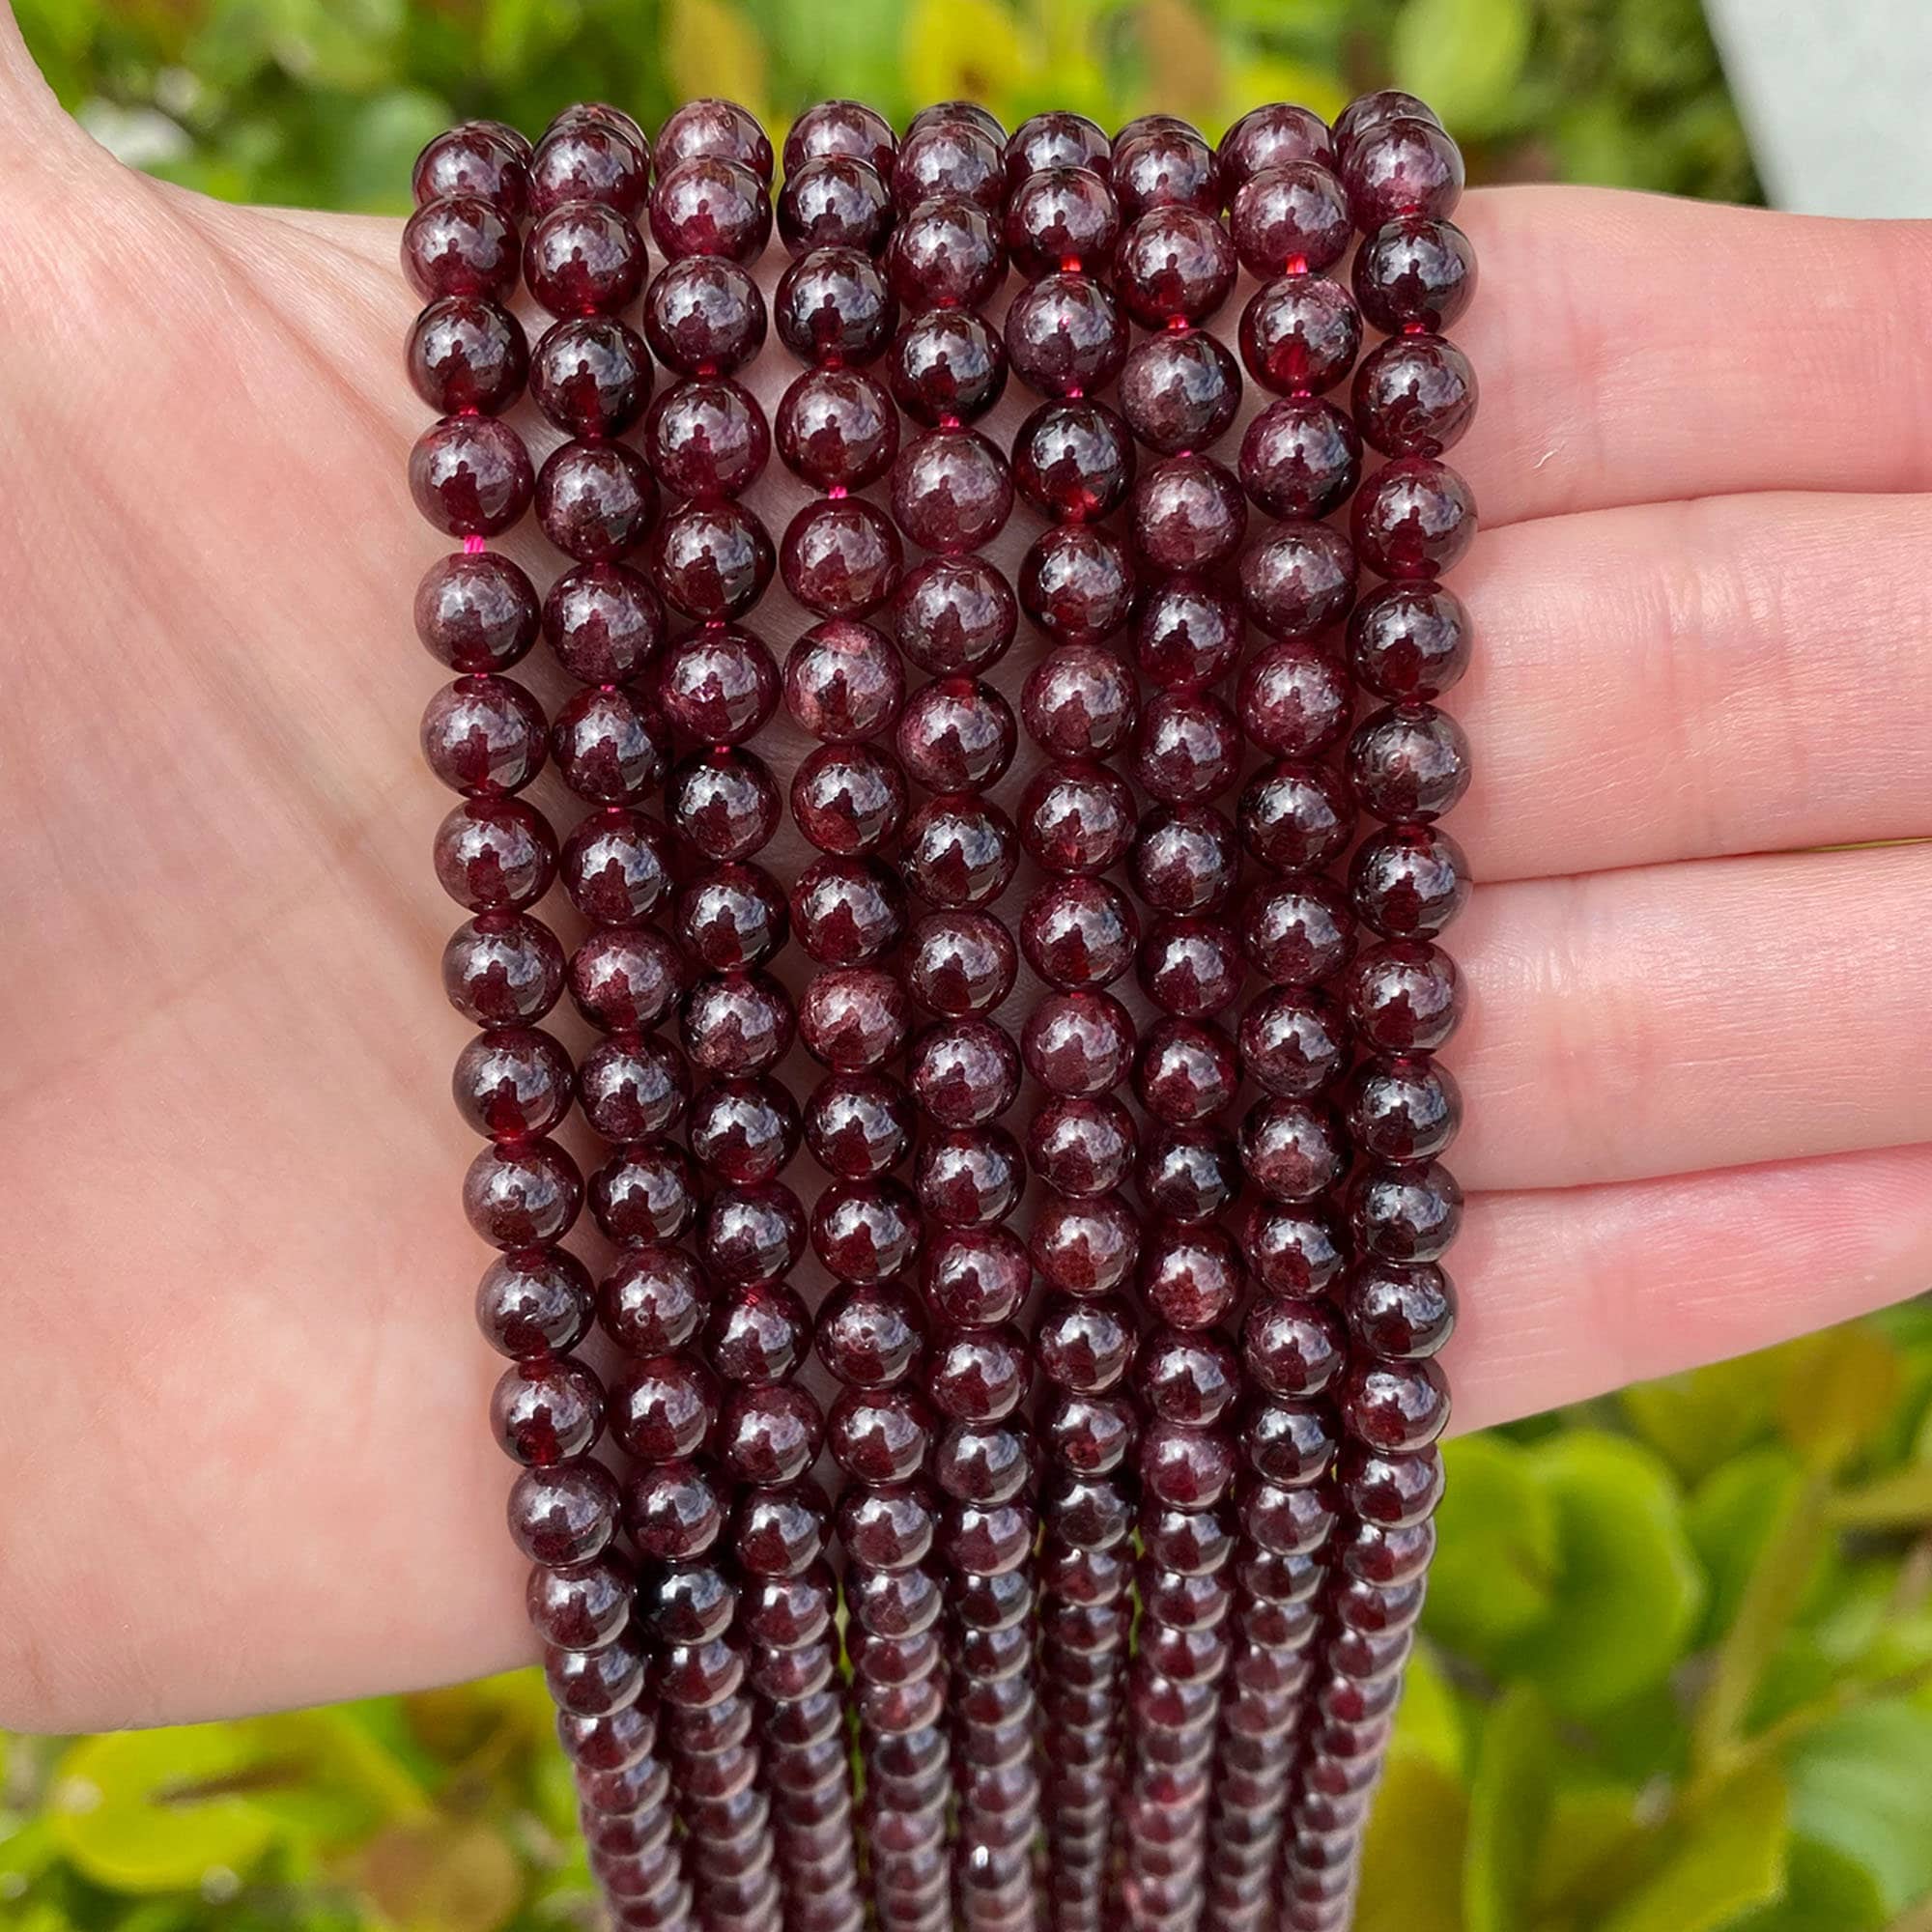 Garnet Round Beads 8mm